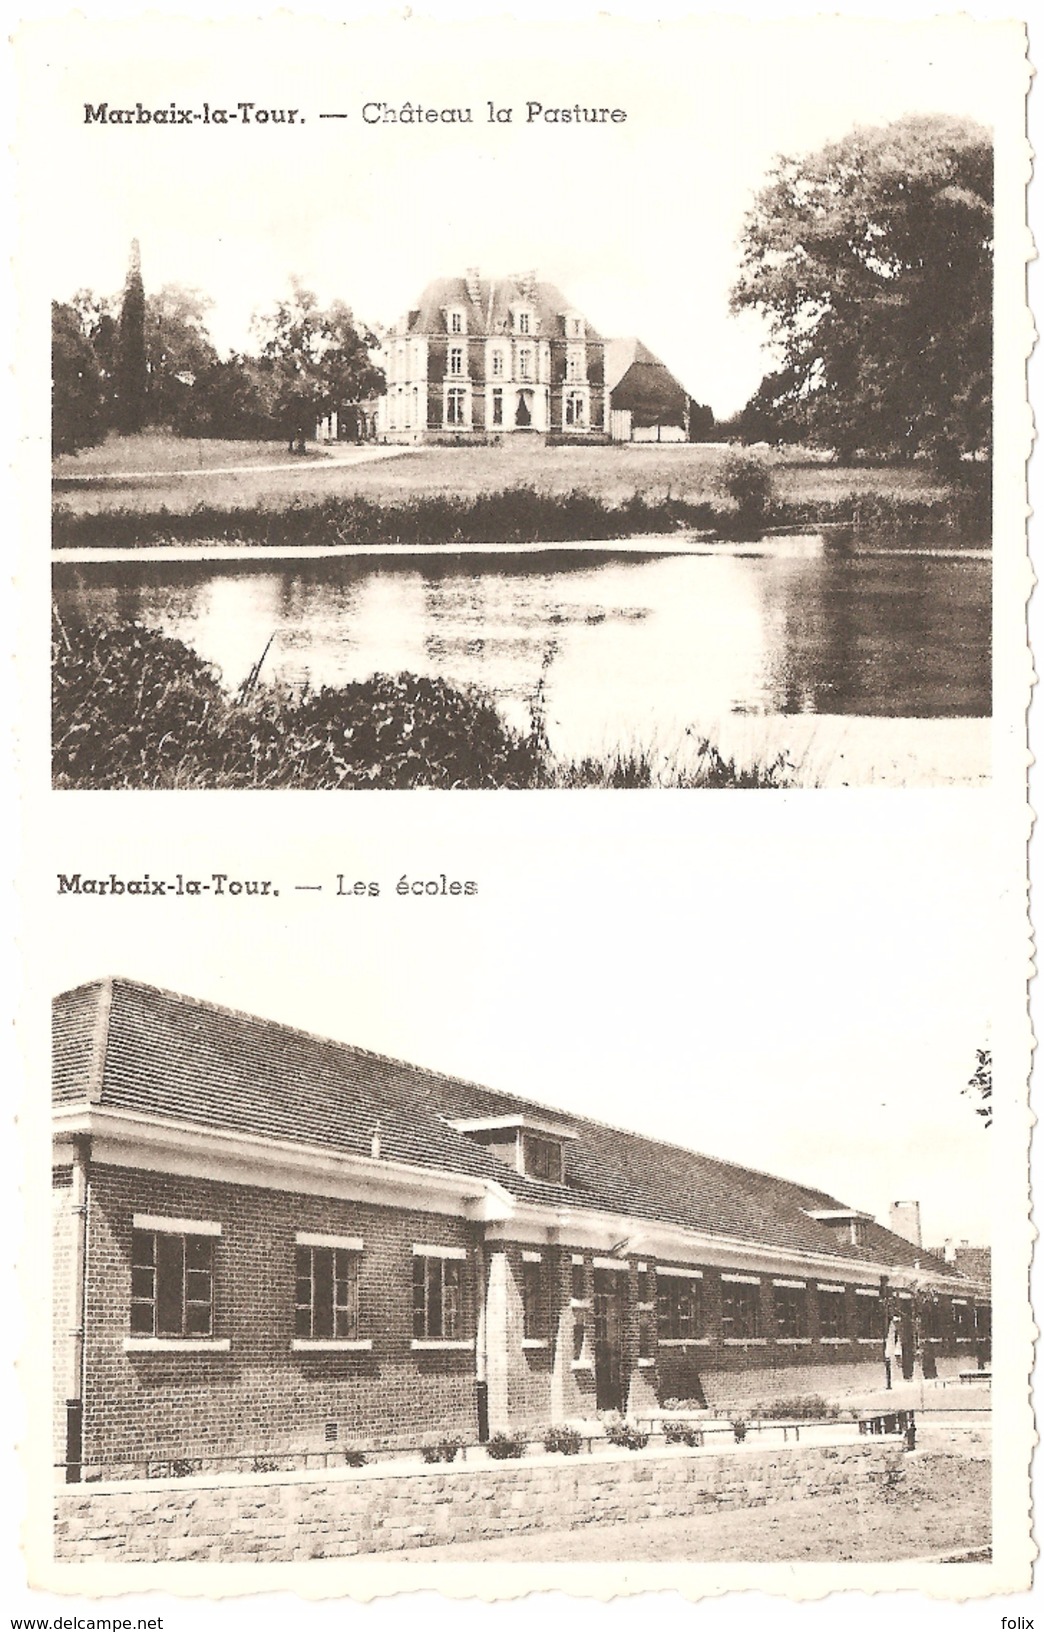 Marbaix-la-Tour - Château La Pasture - Les écoles - état Neuf - Coll. Marlier, Marbaix-la-Tour - Ham-sur-Heure-Nalinnes